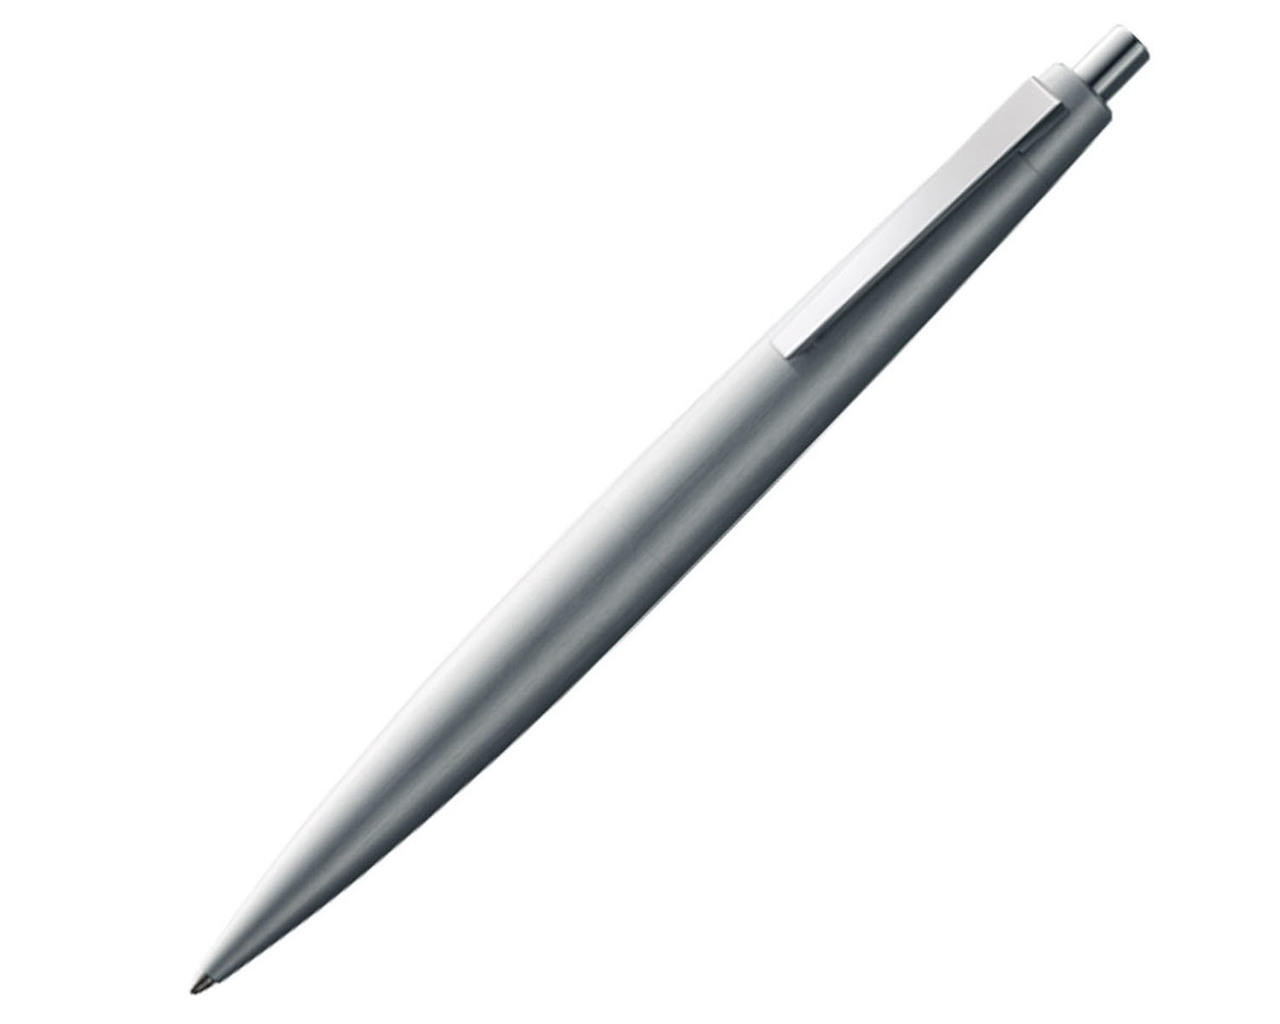 Stainless Steel Pens — The Glitter Guy